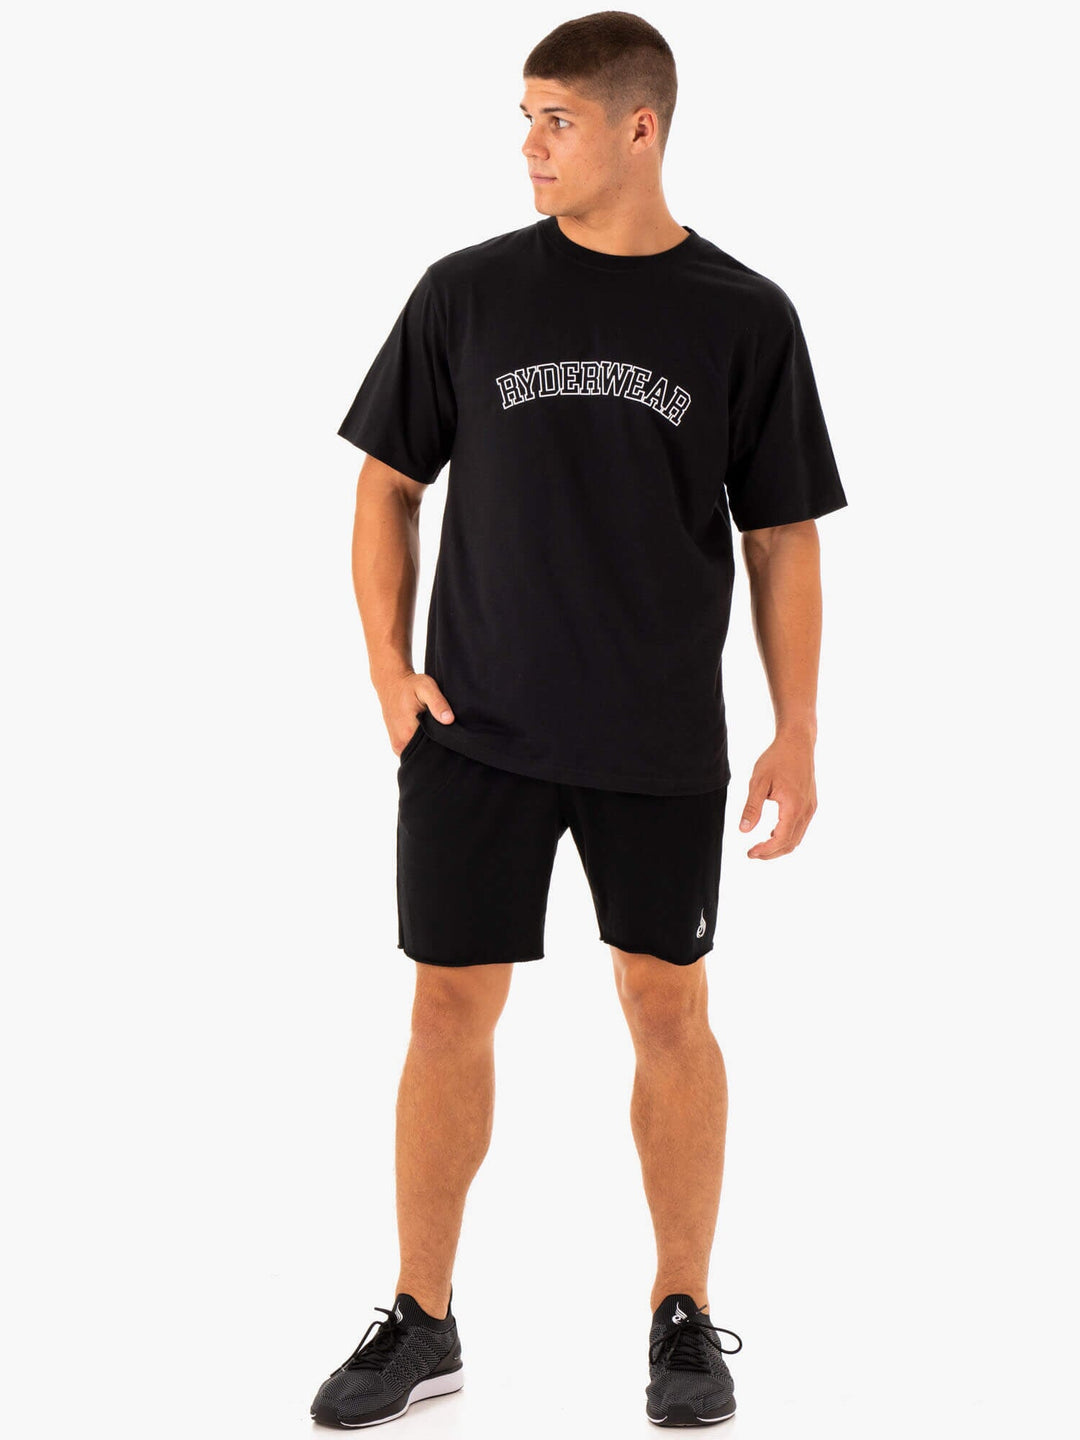 Oversized T-Shirt - Black Clothing Ryderwear 